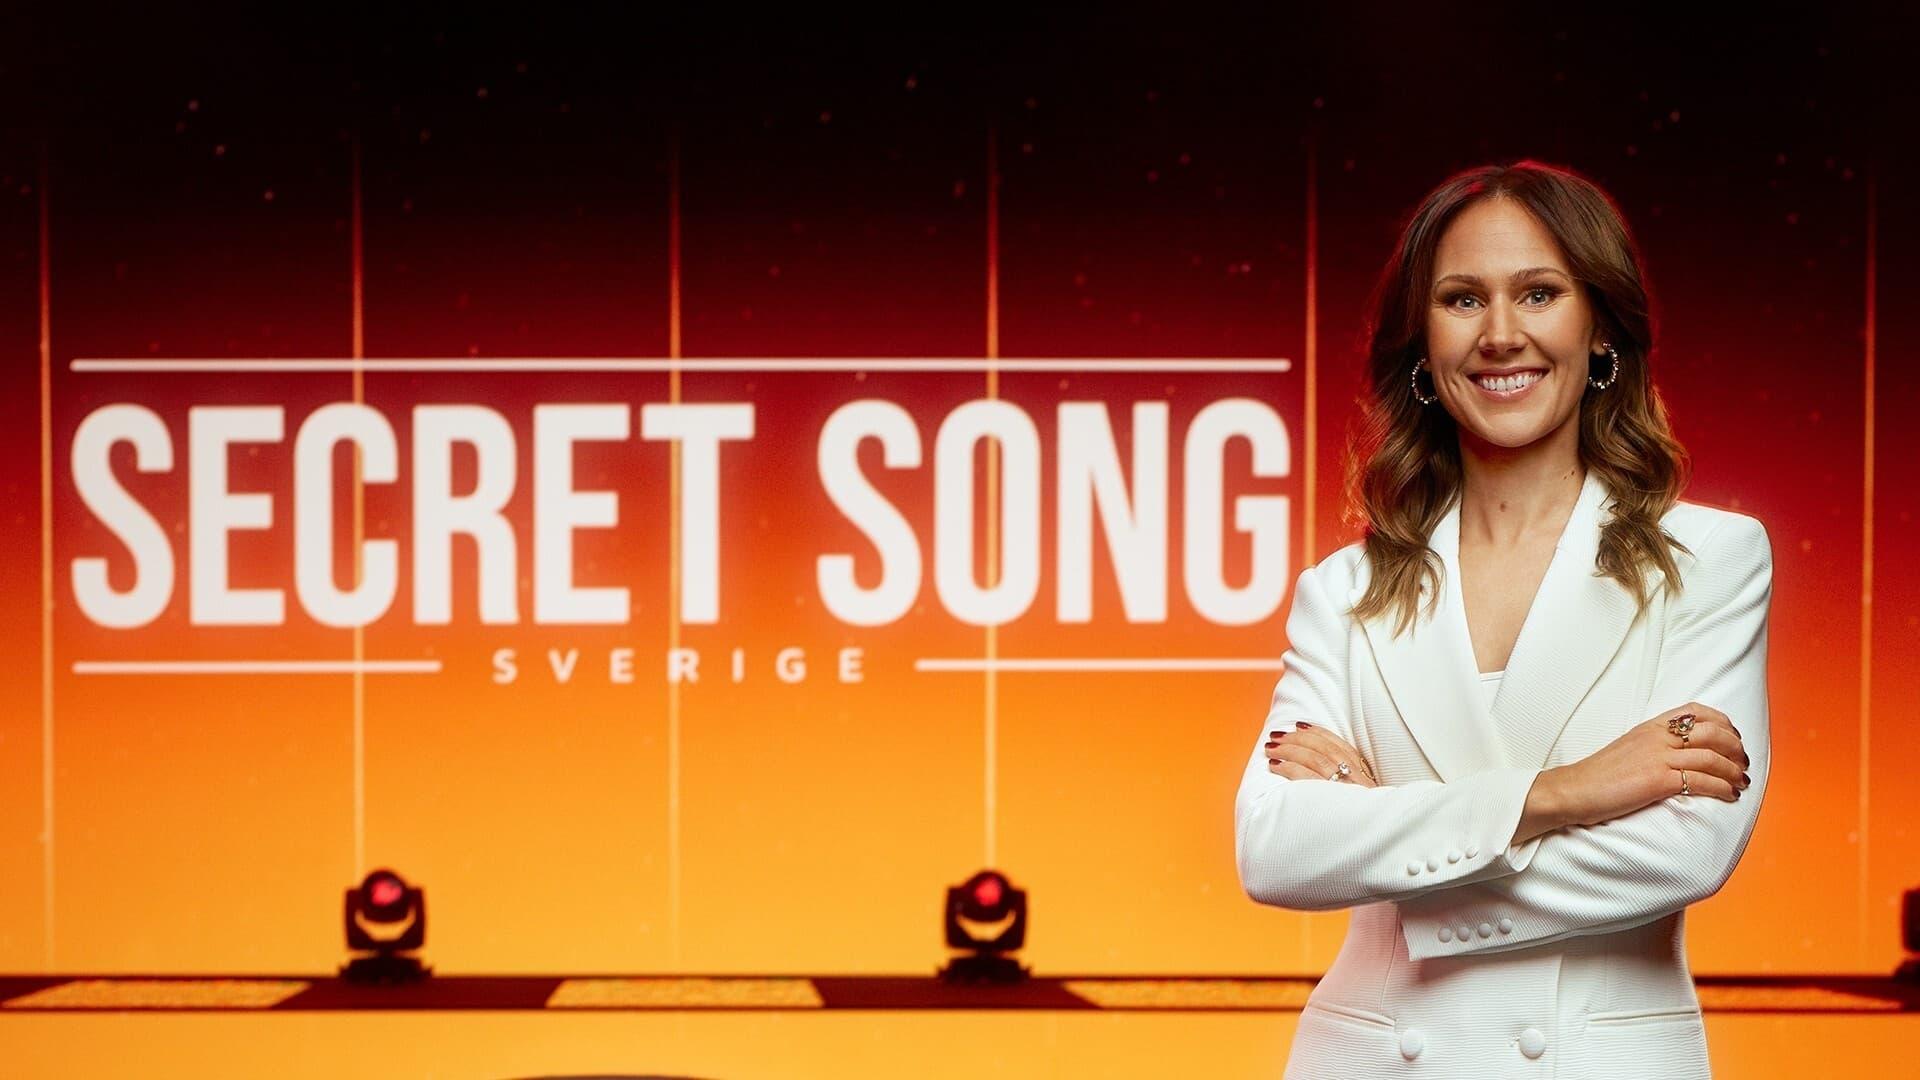 Secret Song Sverige backdrop